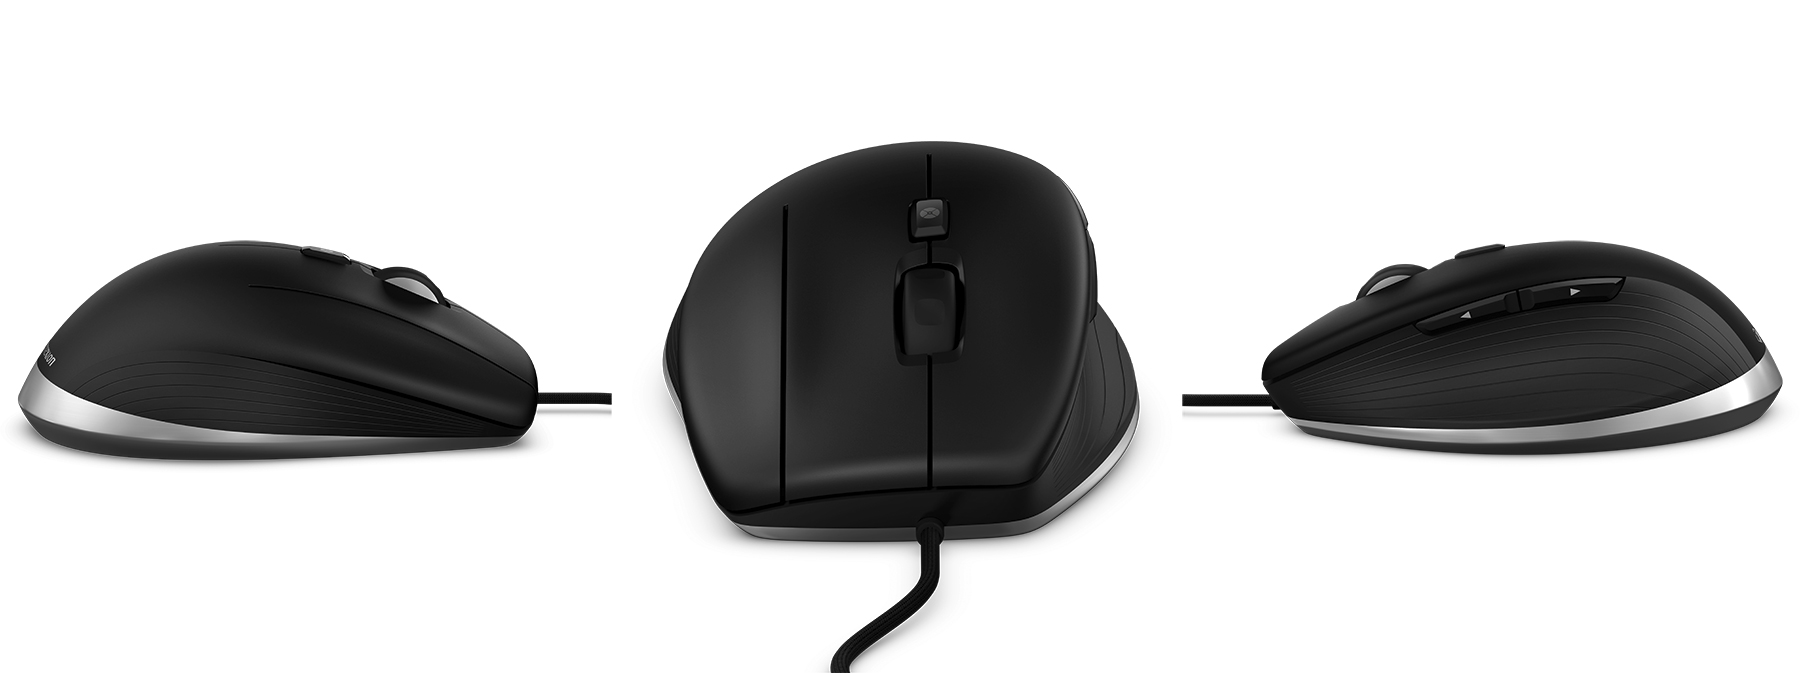 3dconnexion-cadmouse-3-button-mouse-01